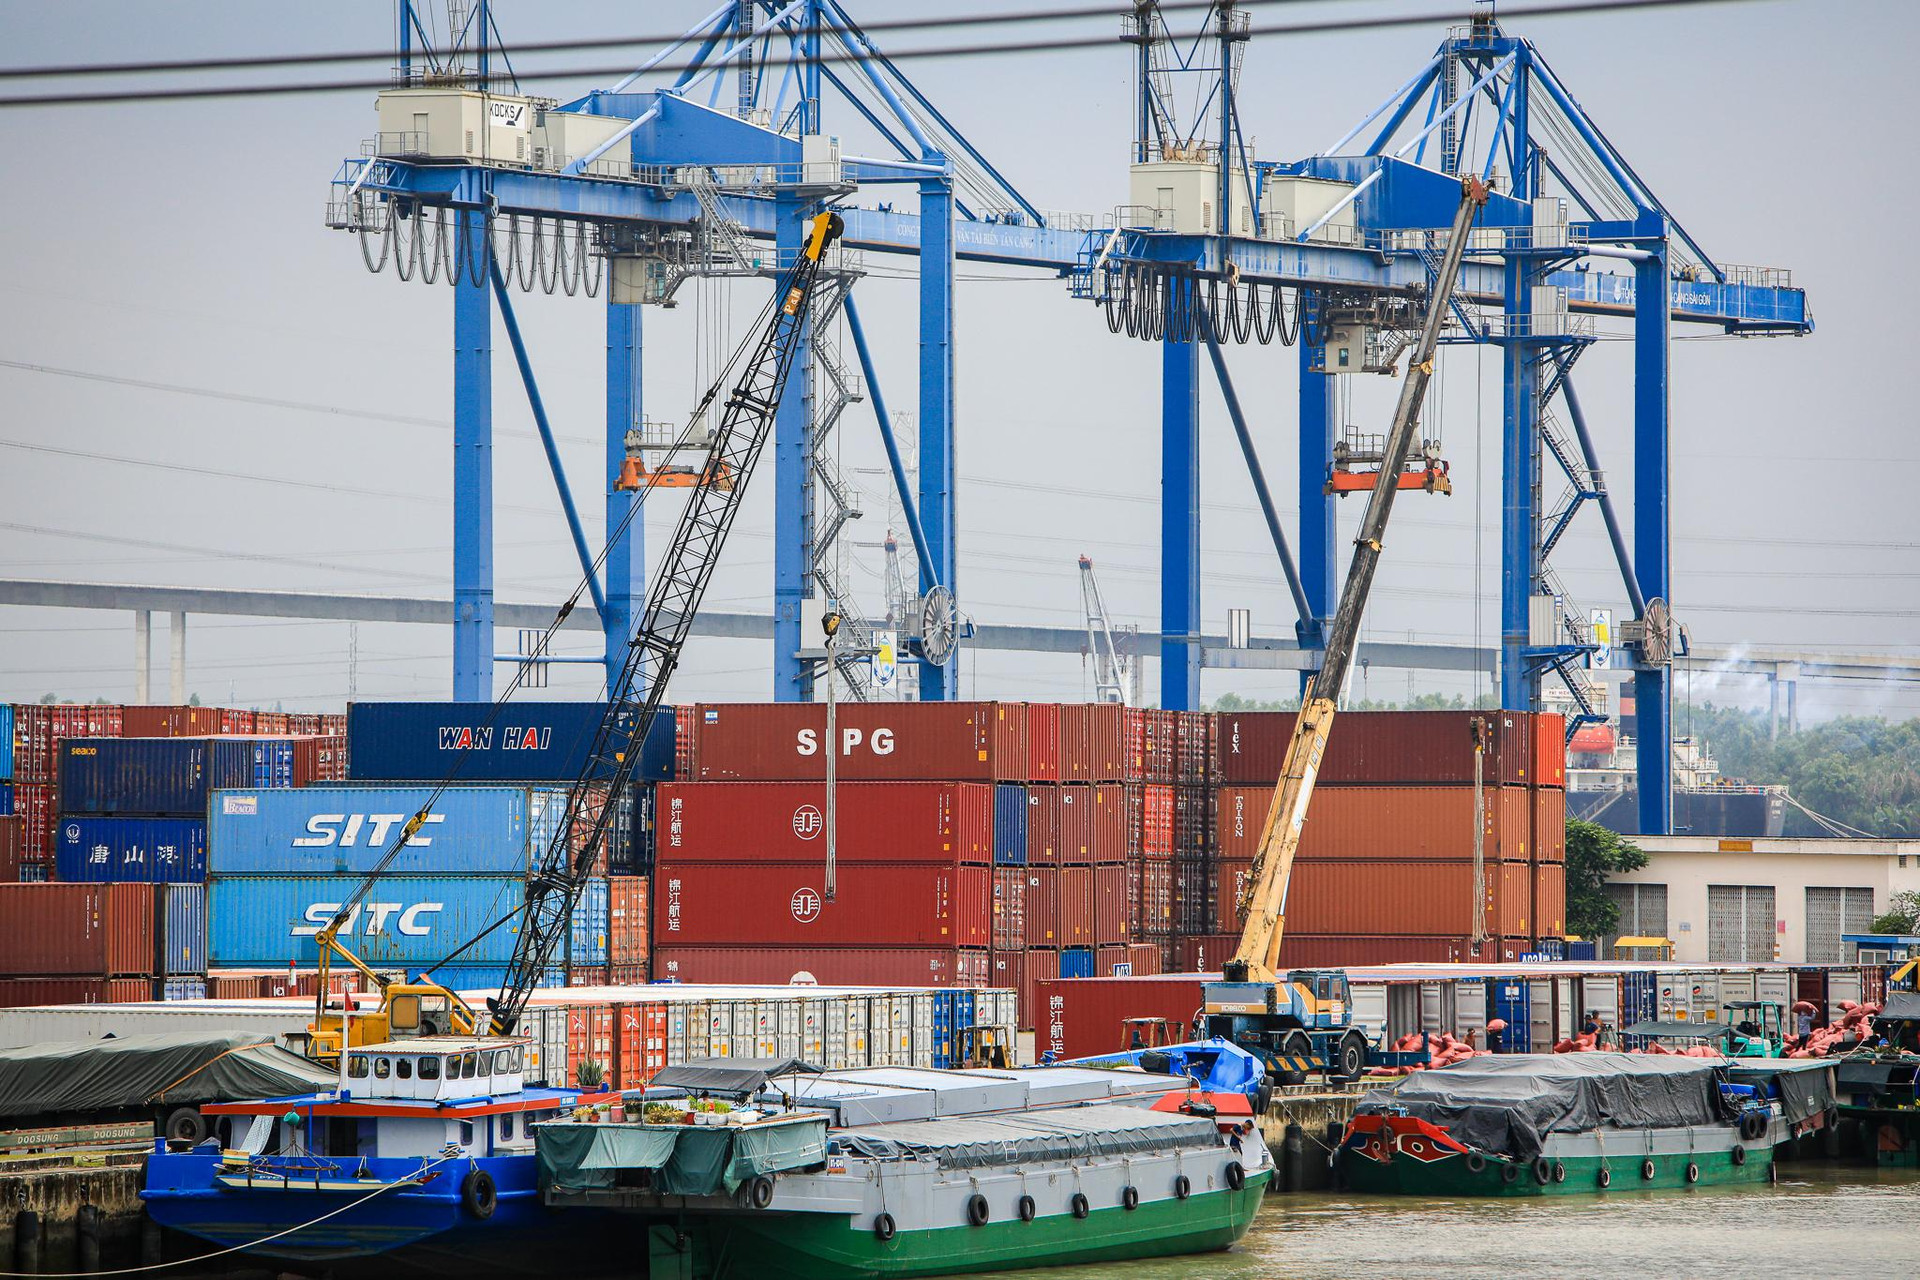 ‏K‏‏hu công nghiệp ‏‏có đến 3 cảng quốc tế, rộng nhất ‏‏TP. HCM